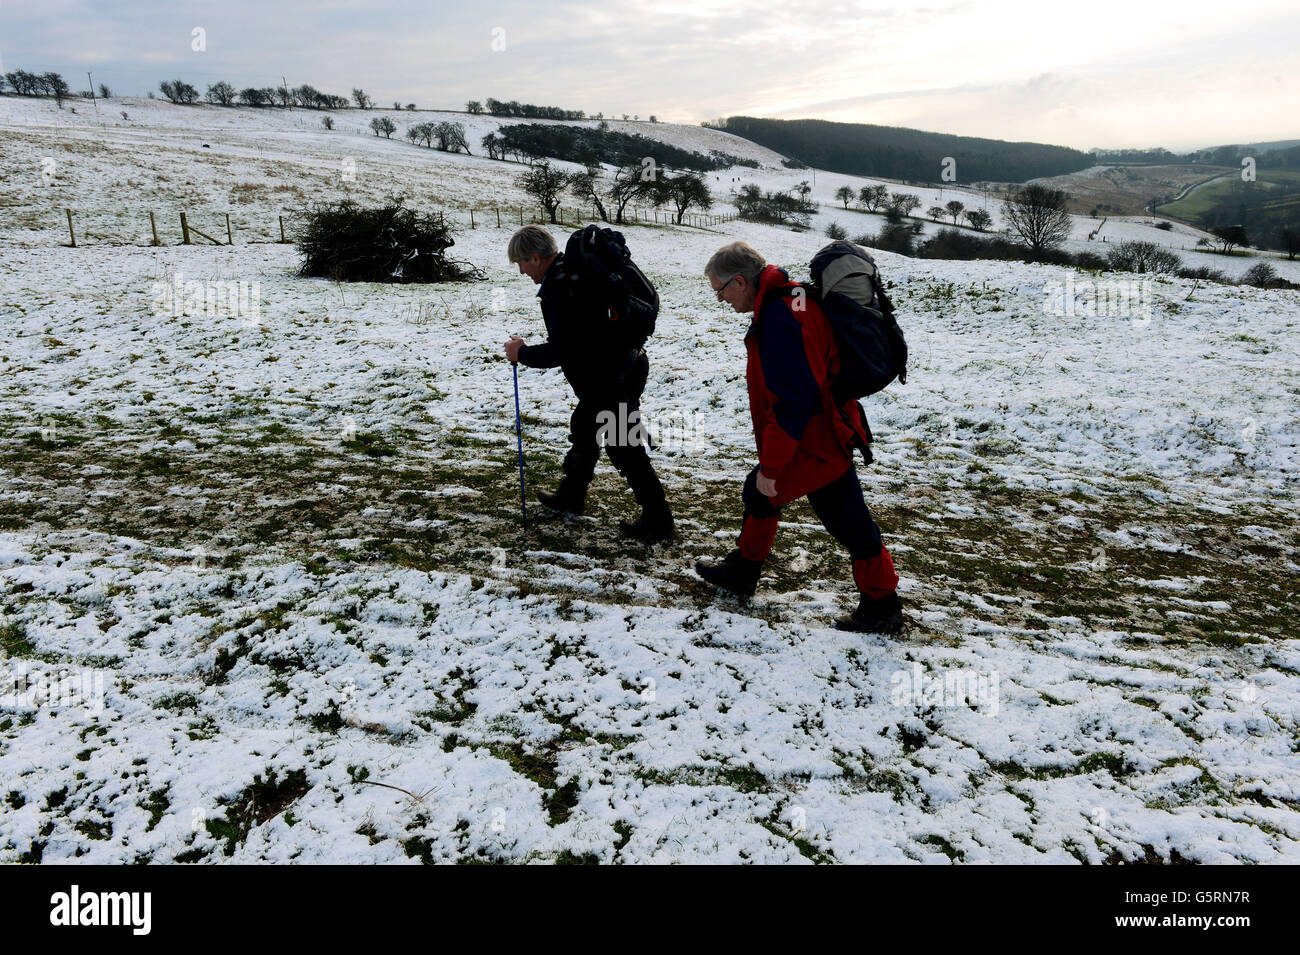 La neve sul terreno alto dei Wolds dello Yorkshire ai pascoli di Millington, vicino a Pocklington, dà agli escursionisti un assaggio del tempo invernale e della neve che si prevede di influenzare molte aree del Regno Unito nei prossimi giorni. Foto Stock